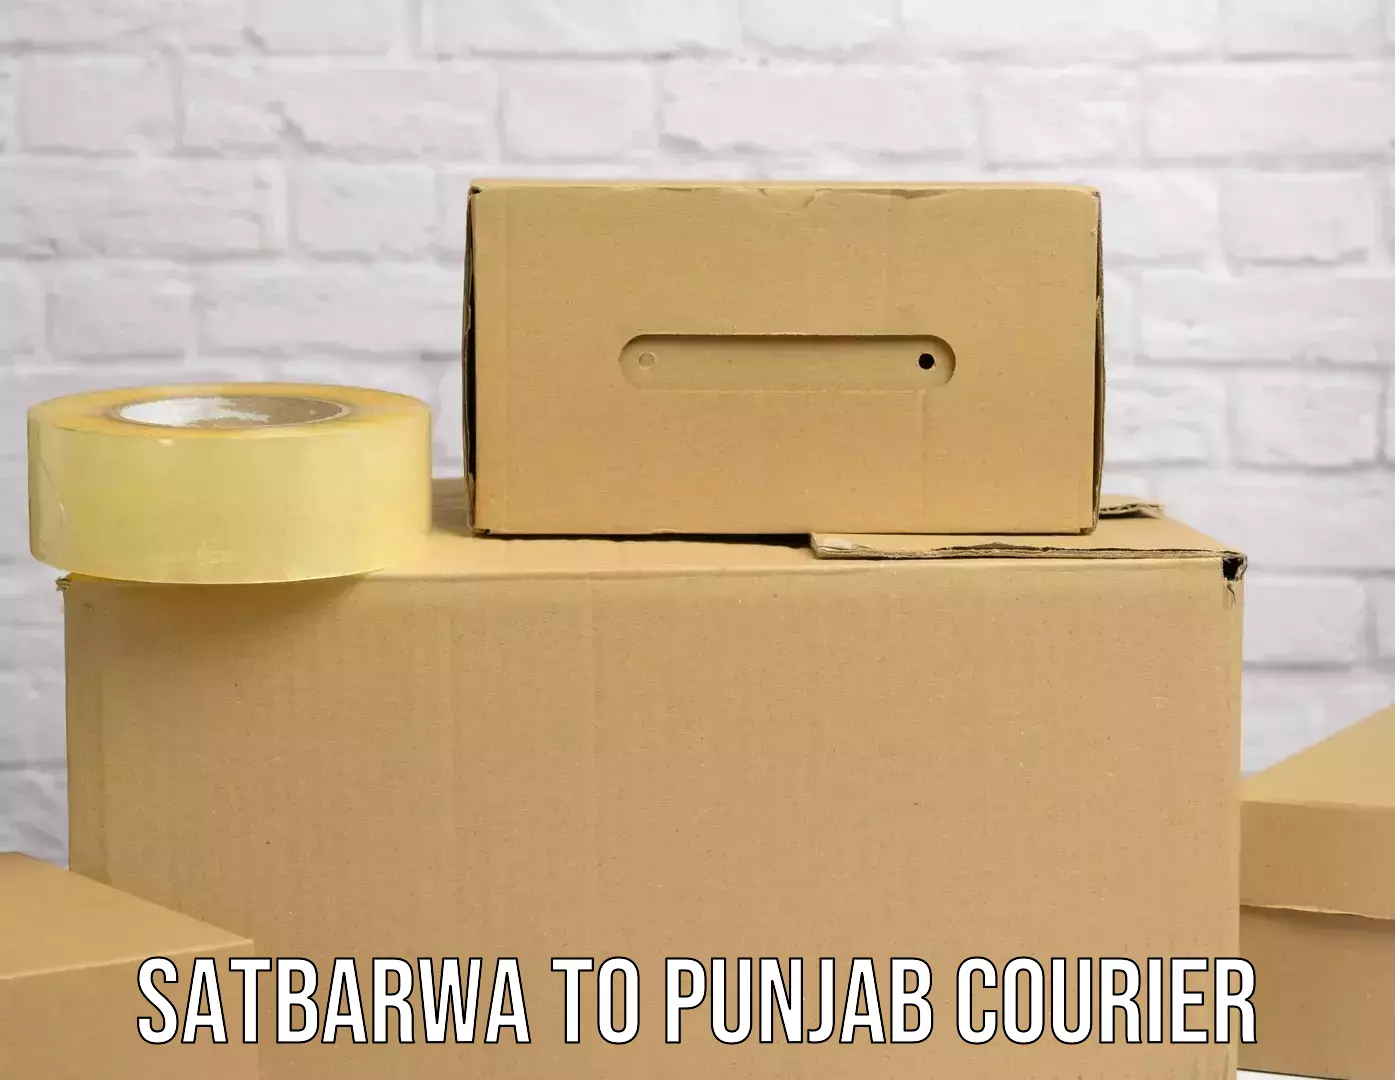 High-capacity shipping options Satbarwa to Zirakpur